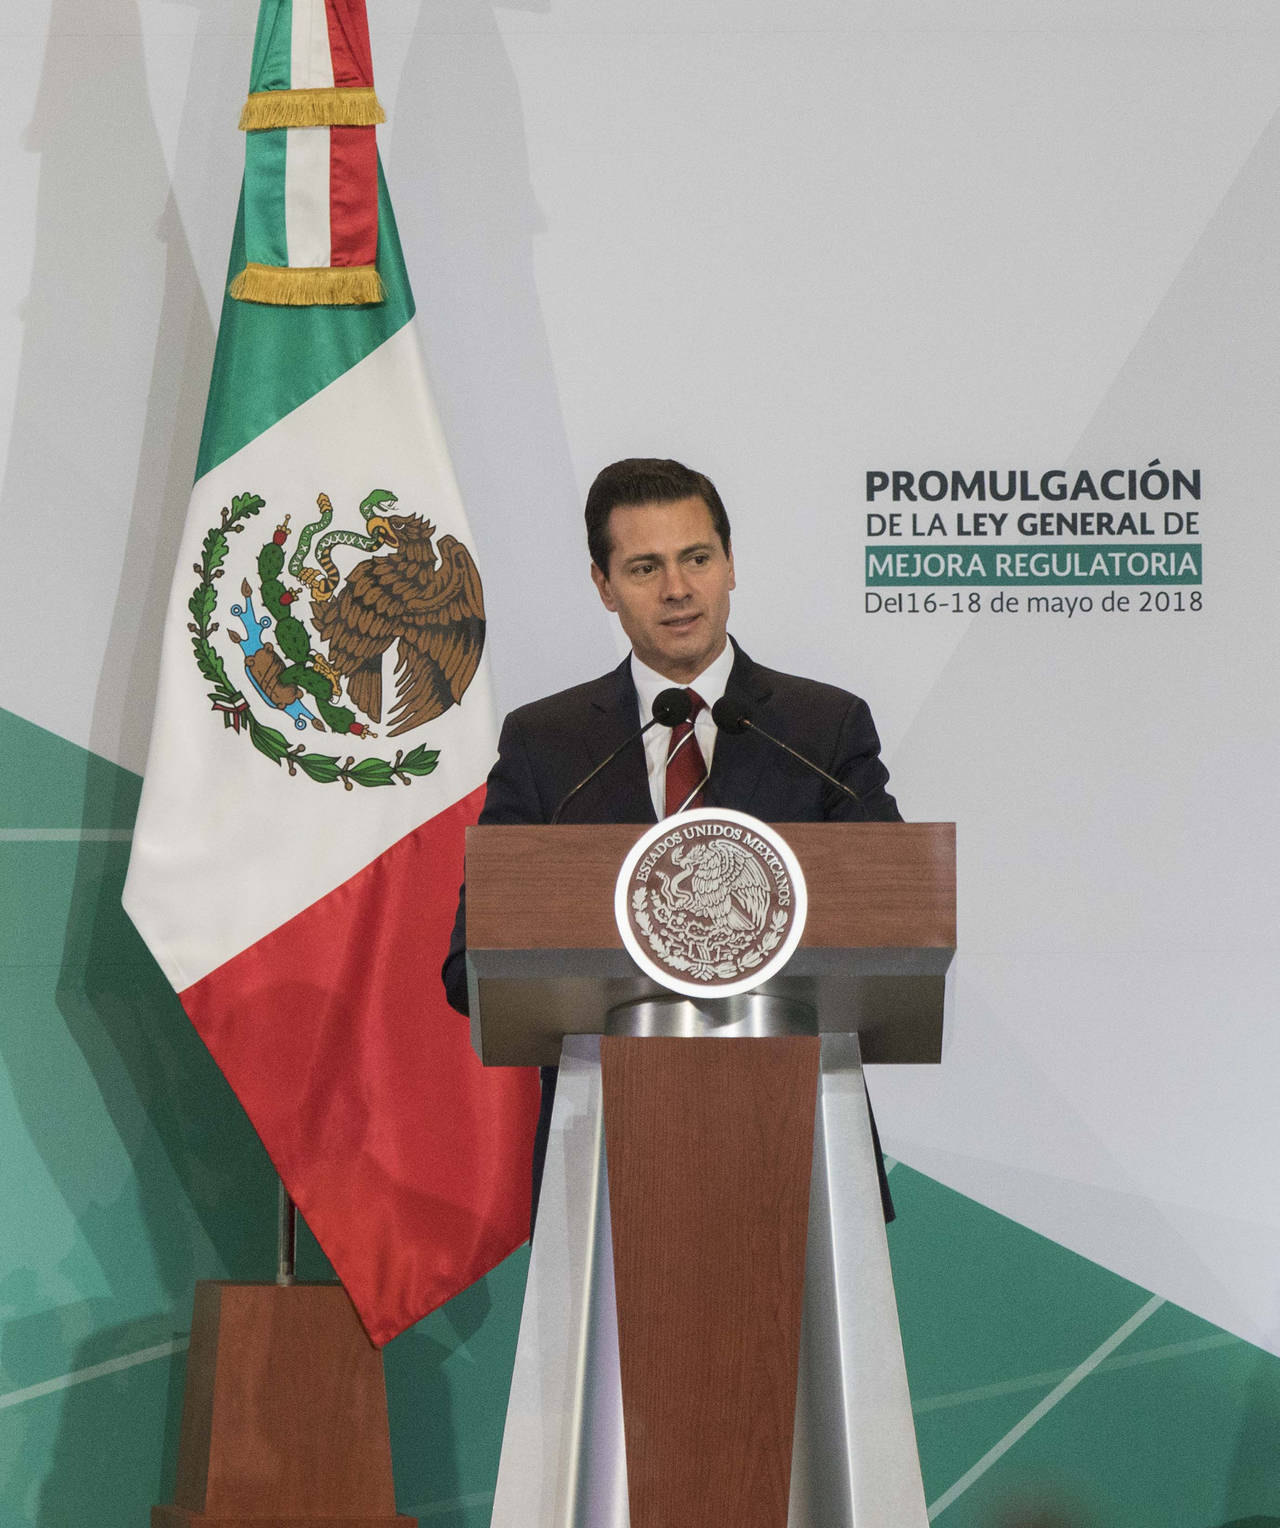 Enrique Peña Nieto felicitó a los Guerreros vía Twitter. (Notimex)